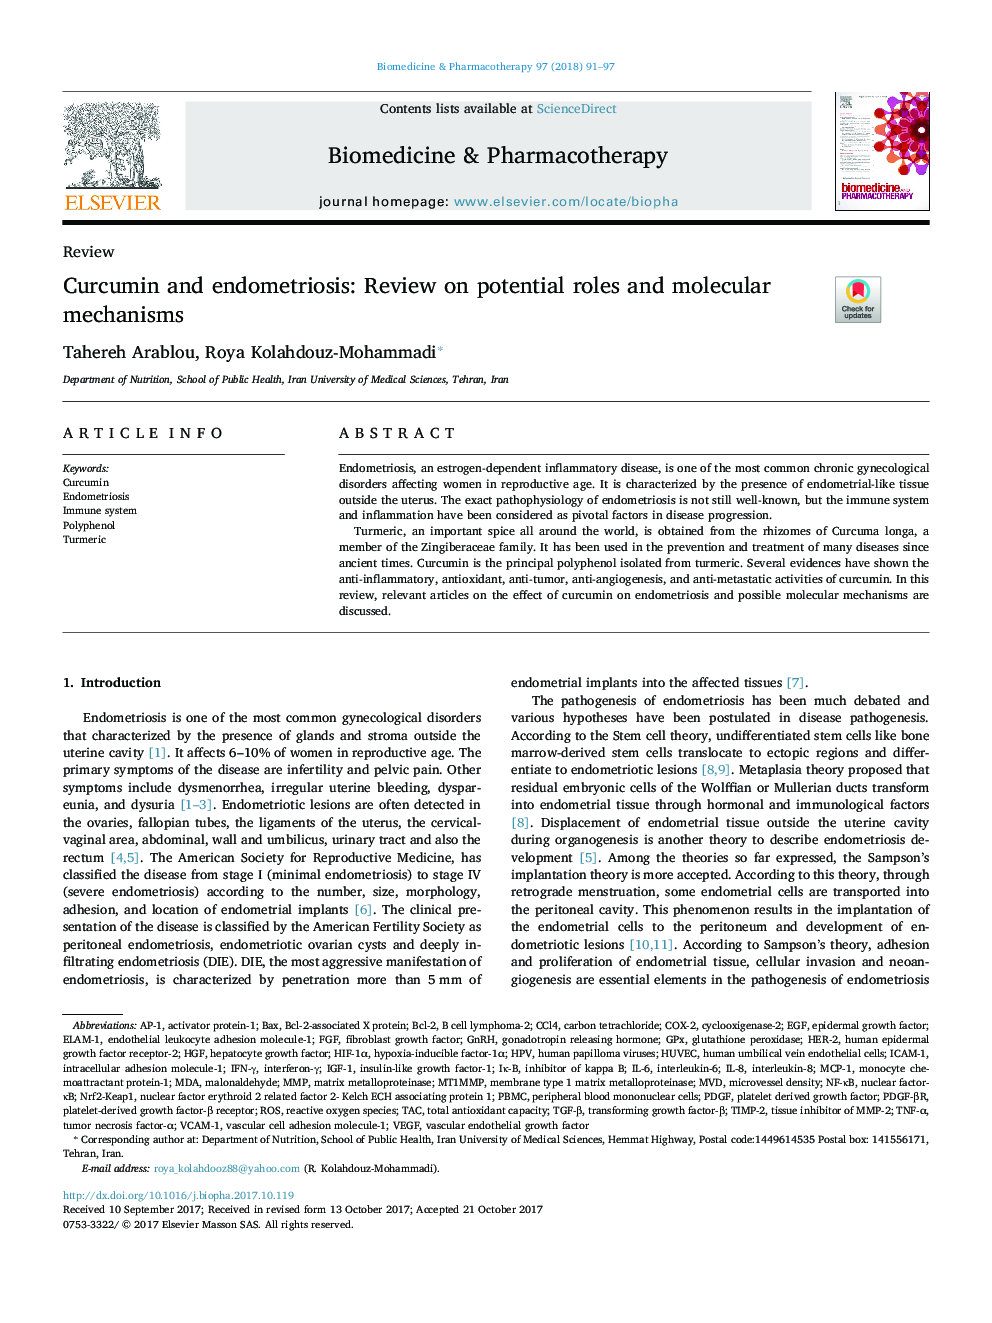 کرکومین و آندومتریوز: بررسی نقش بالقوه و مکانیزم های مولکولی 